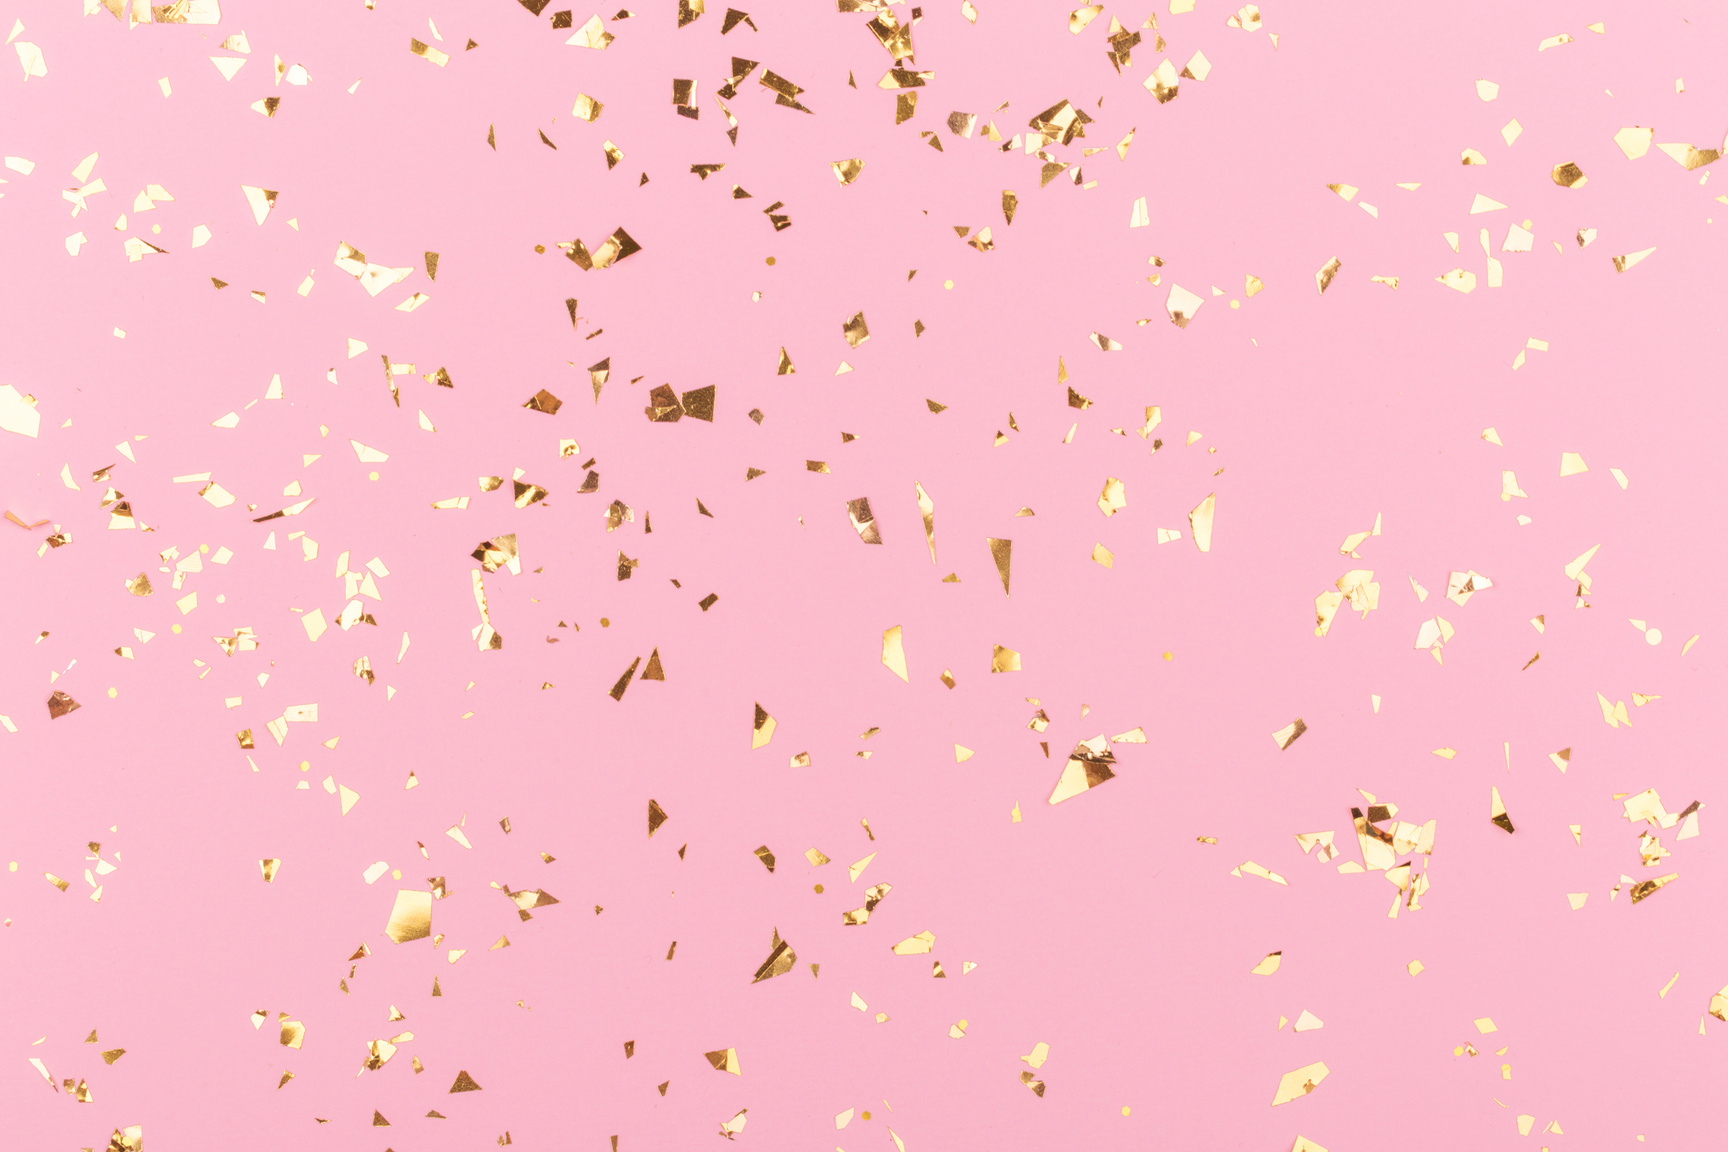 Golden sparkles on pink